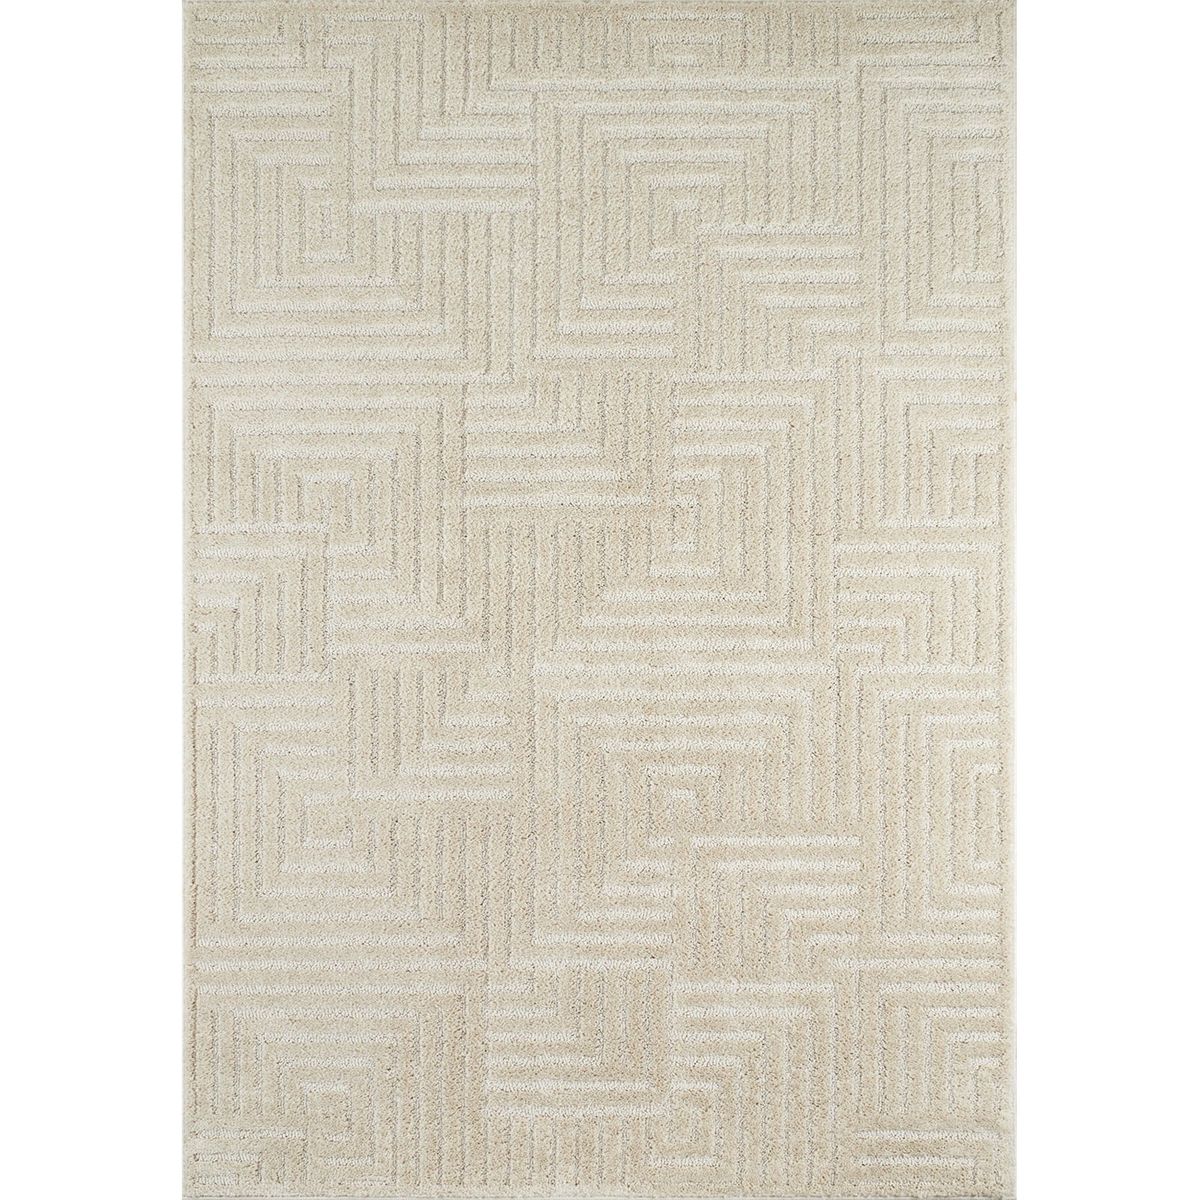 Tapis salon motif en relief crème - 120x170 cm HARMONIE